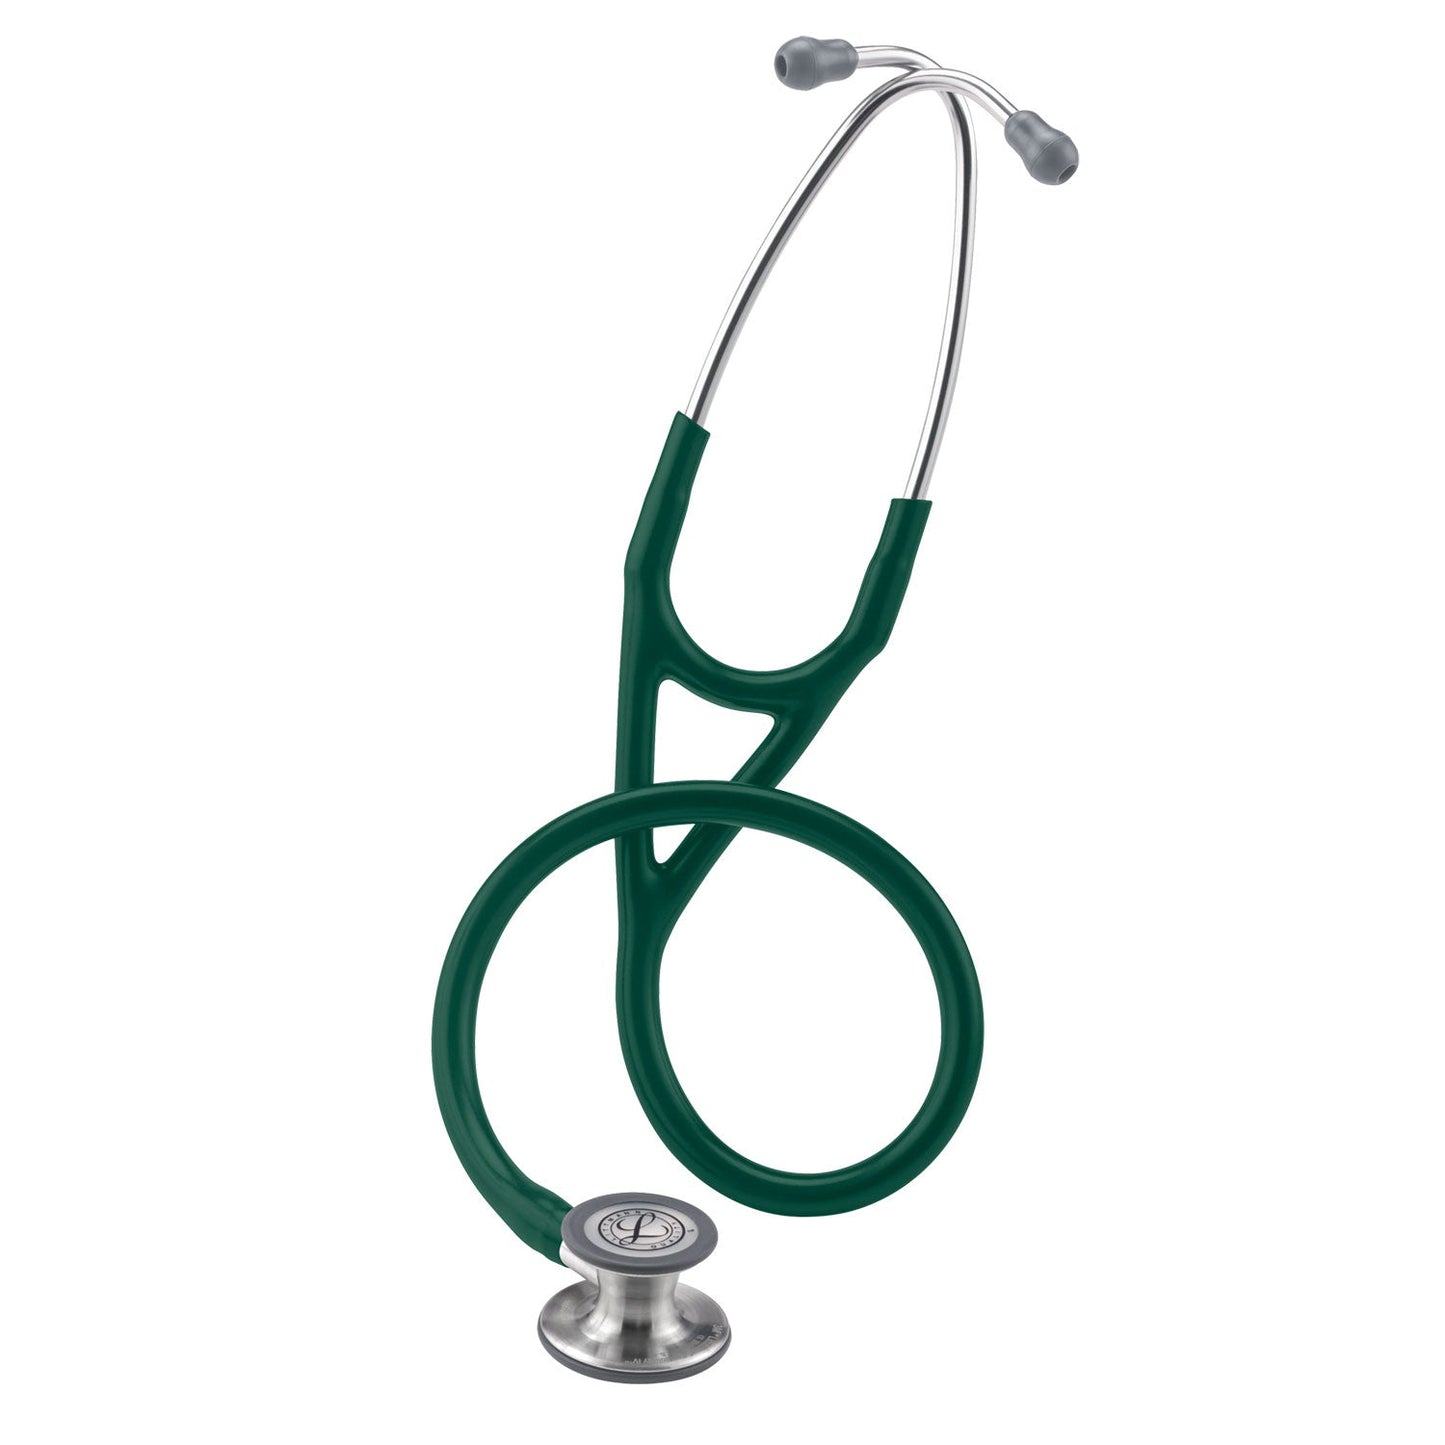 Fonendoscopio diagnóstico 3M™ Littmann® Cardiology IV™, campana de acabado estándar, tubo verde oliva oscuro y vástago y auricular de acero inoxidable, 68,5 cm, 6155